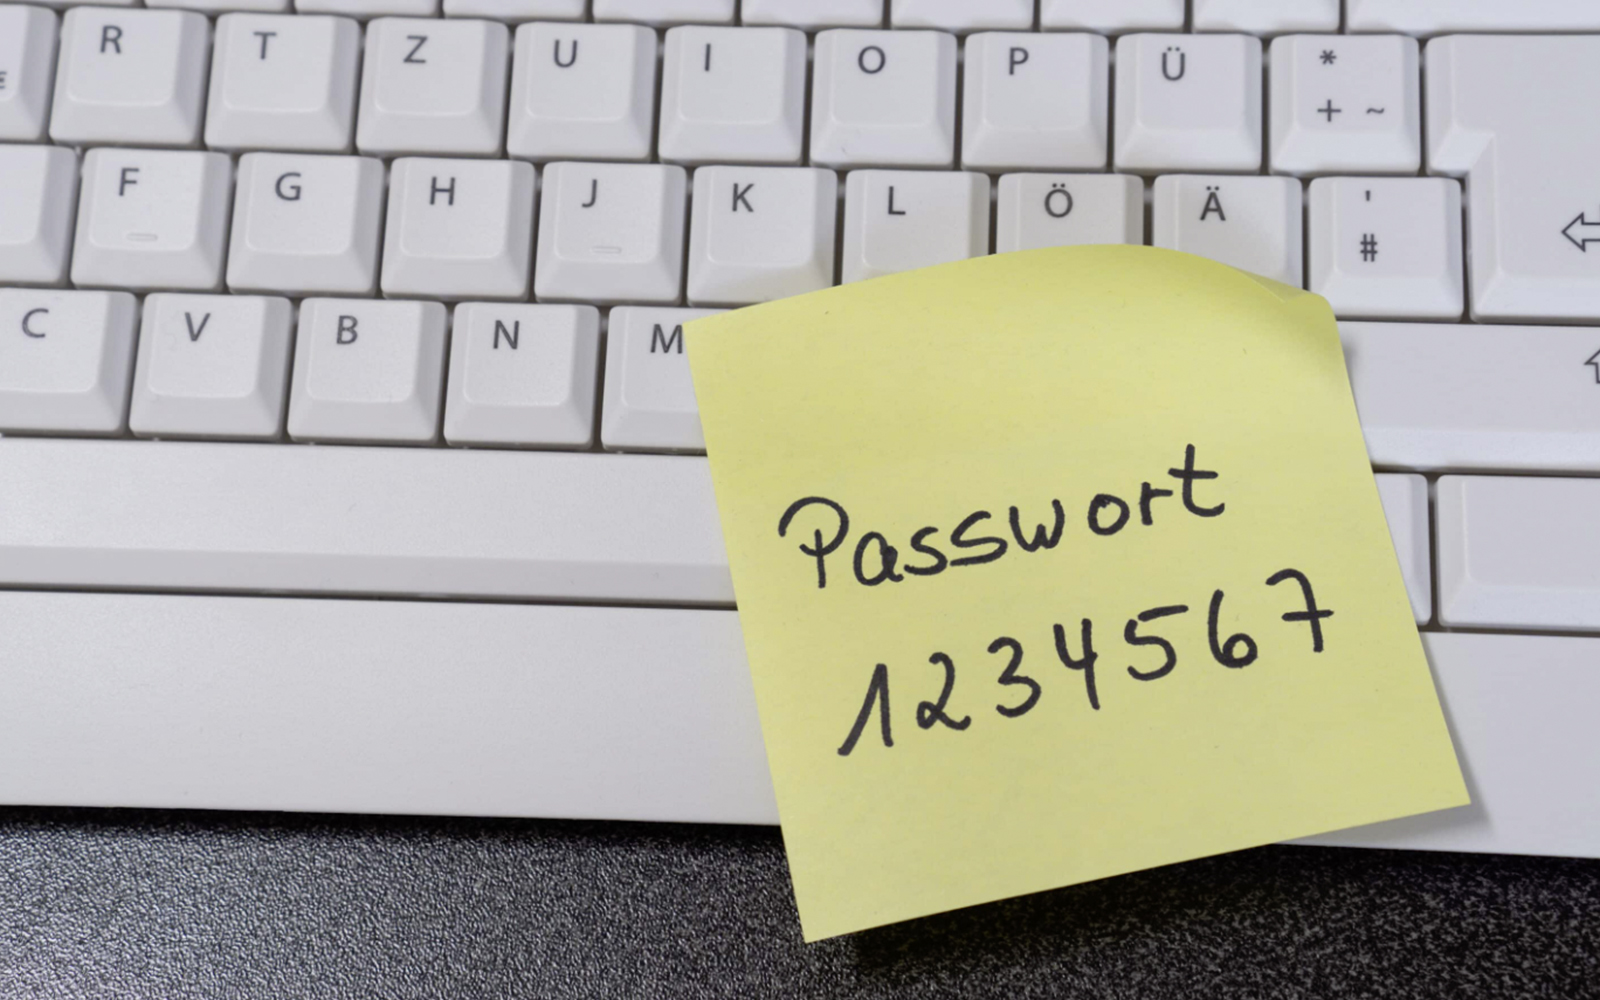 Tastatur mit gelbem Post-it, auf dem Passwort 1234567 steht